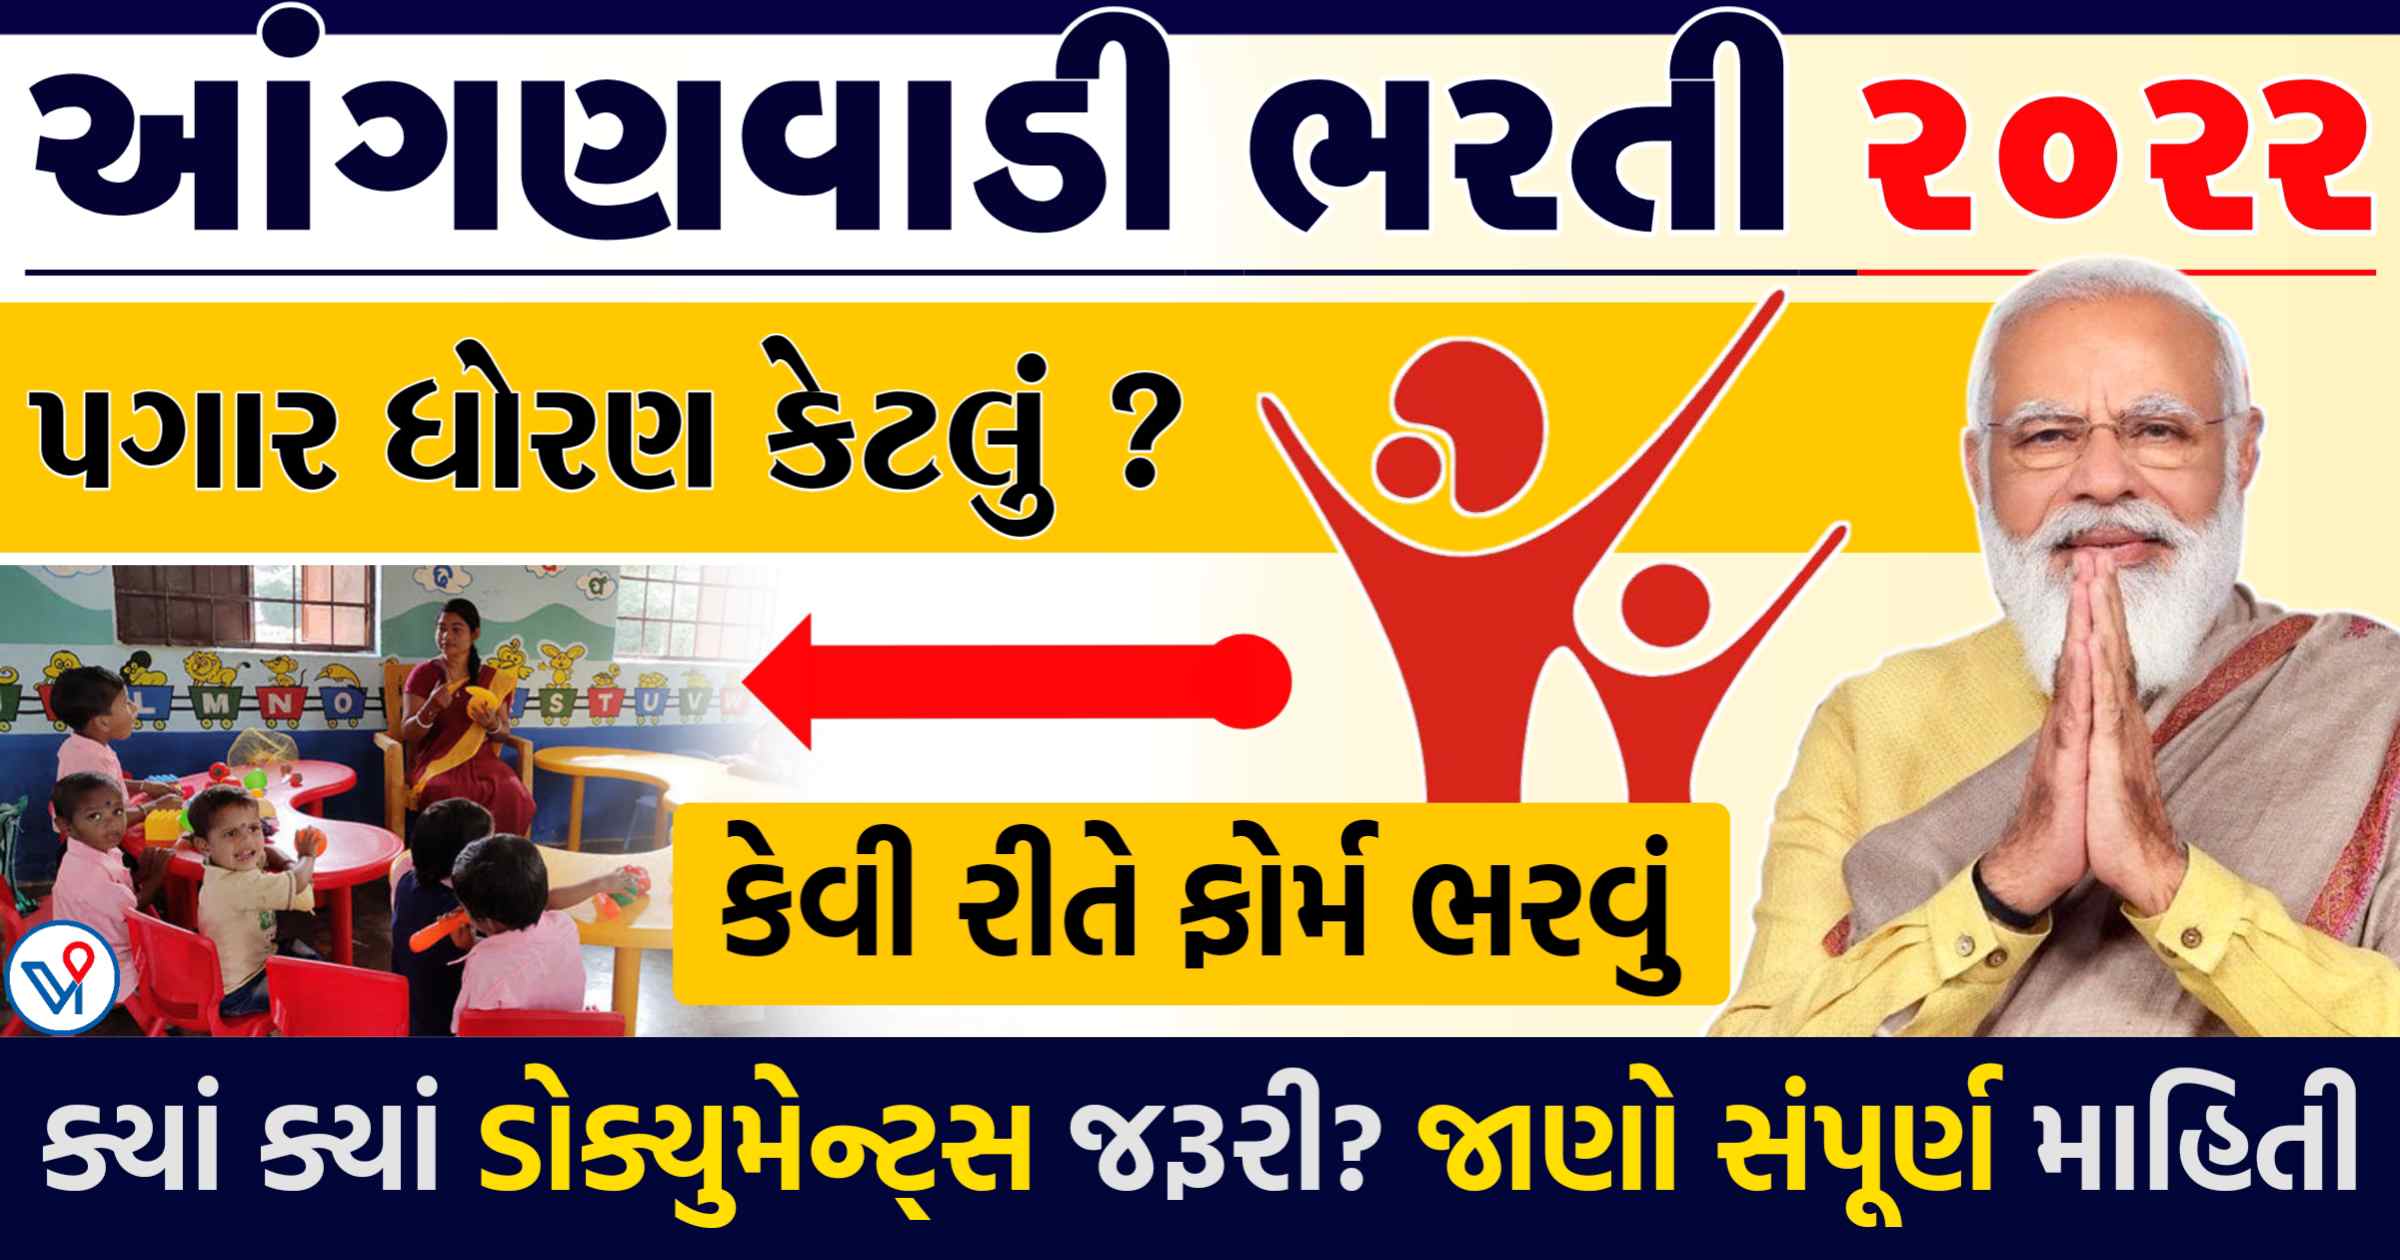 ગુજરાત સરકારે આંગણવાડી વિભાગમાં બહાર પાડી ભરતી, કુલ 7000 પોસ્ટ પર ભરતી, જાણો સંપુર્ણ માહીતી